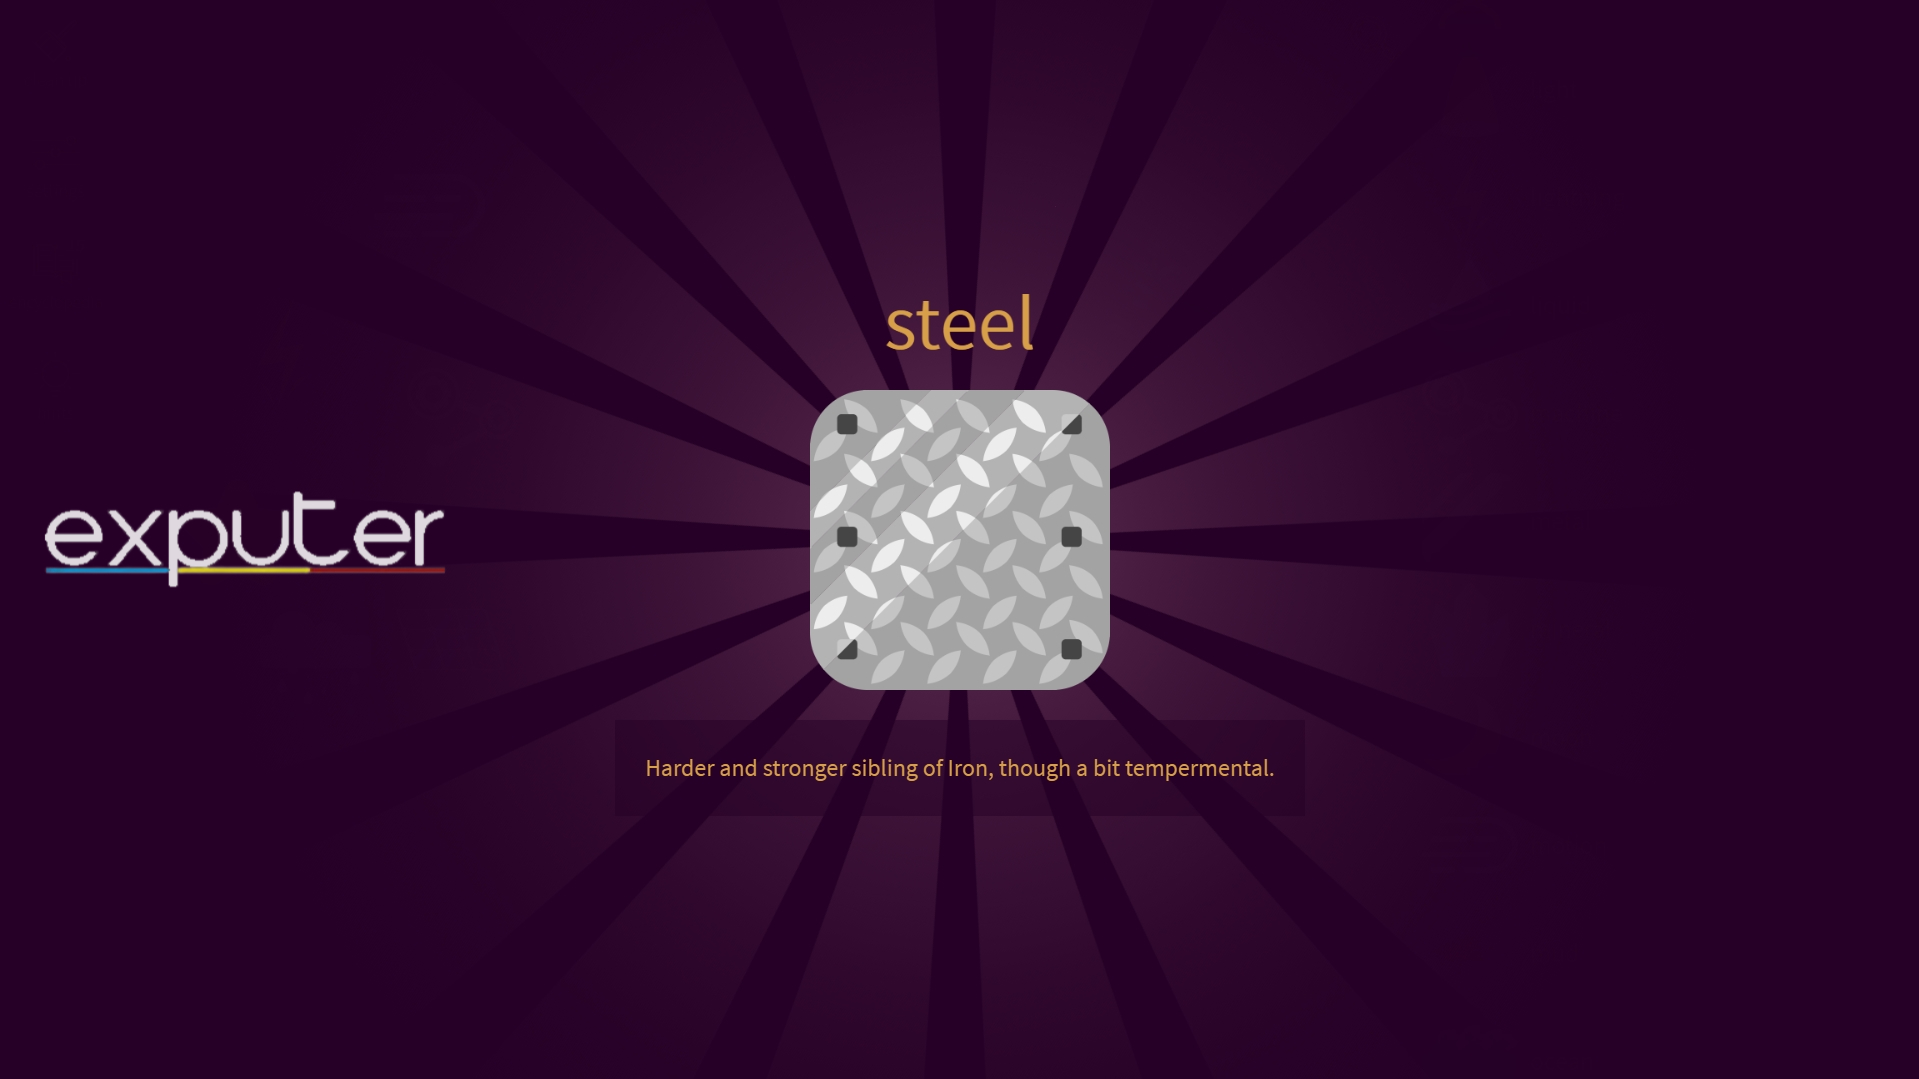 Steel in Little Alchemy 2